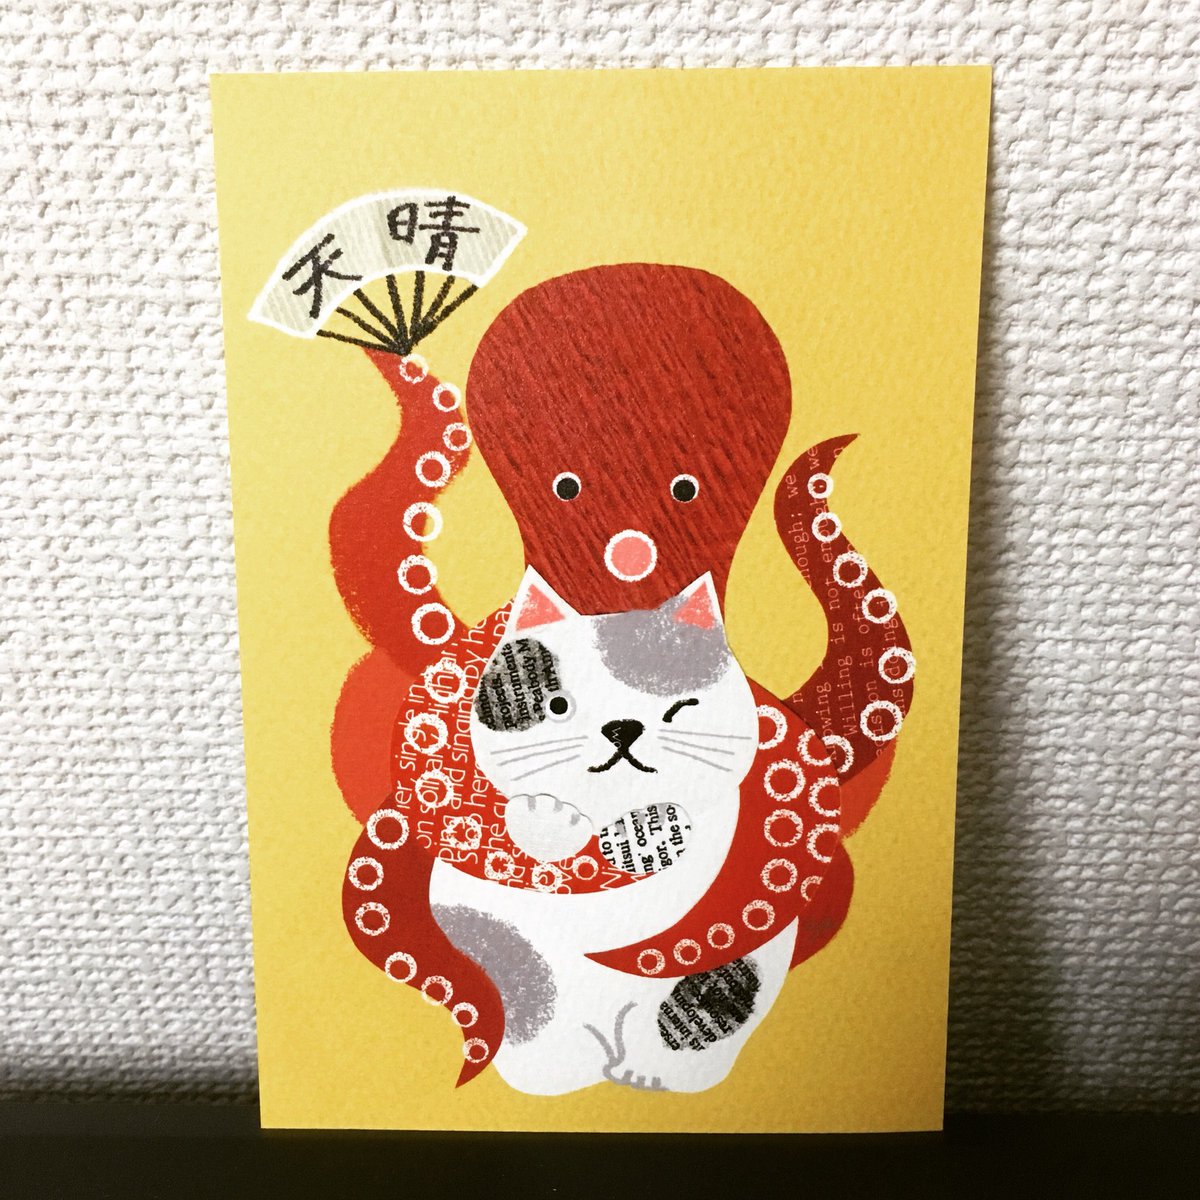 Aya Yonezawa ねこにたこ イラスト Illust Illustration 切り貼り Collage 猫 Cat タコ Octopus 多幸 あっぱれ 天晴 Ayayonezawa T Co Kphtelp551 色んなことがありますが 皆 幸多かれ T Co Vup7izwk02